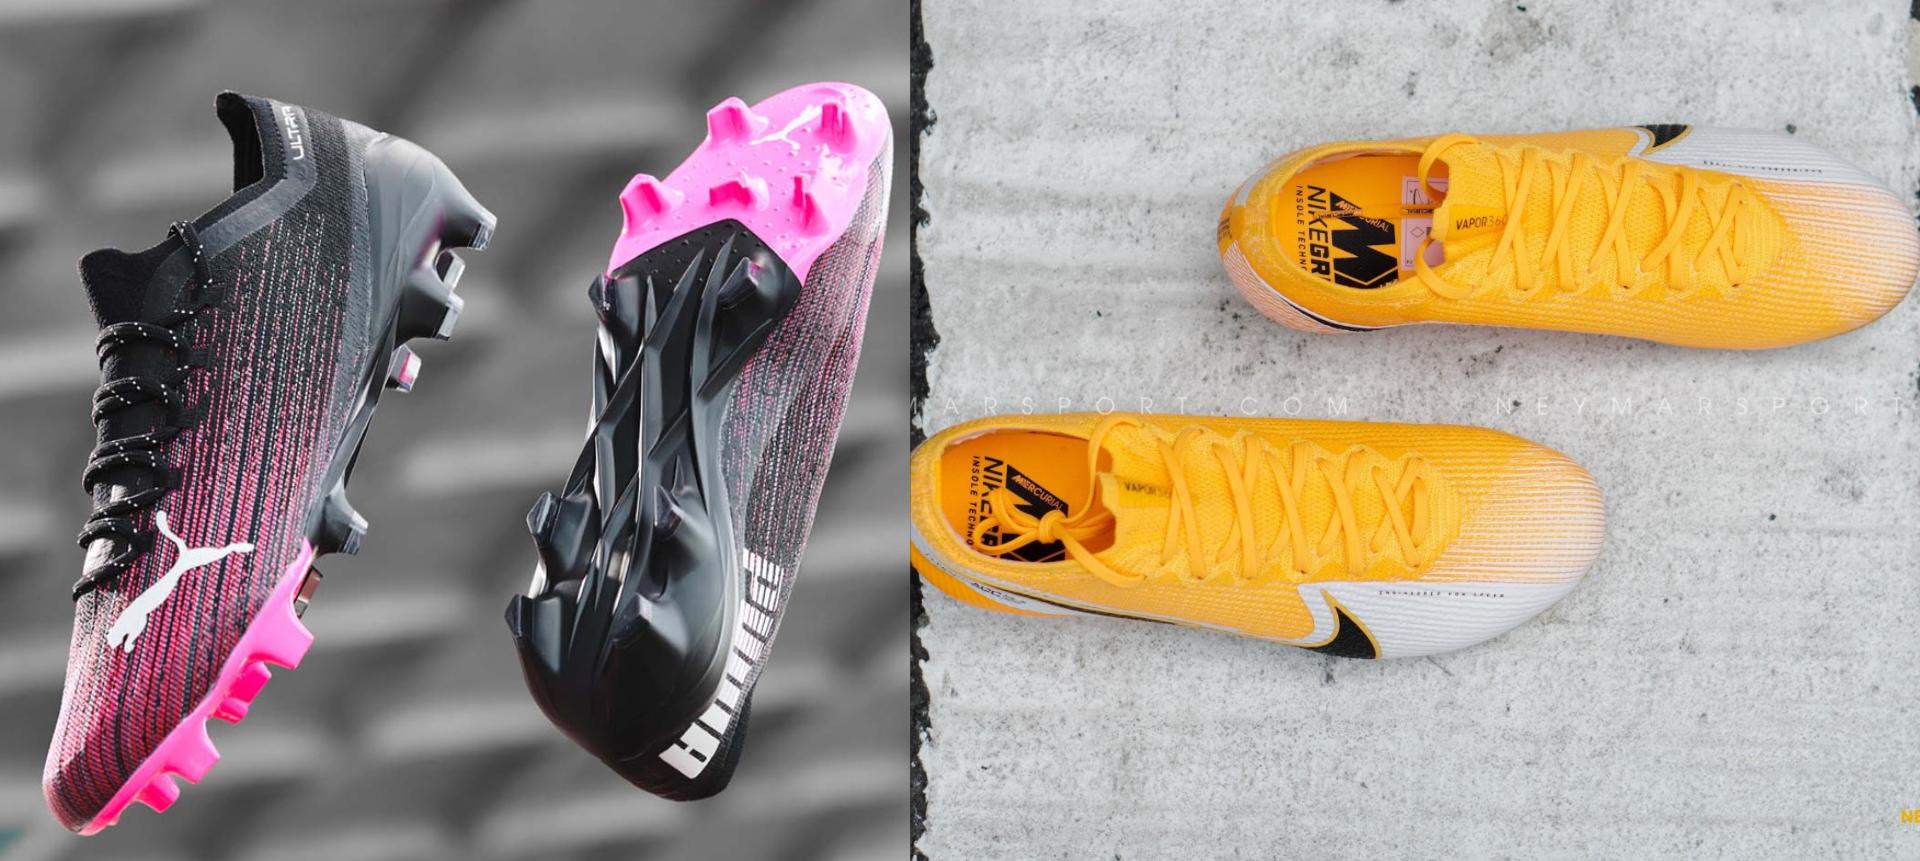 So sánh ngoại hình giày đá bóng Nike Mercurial Vapor 13 và Puma Ultra 1.1